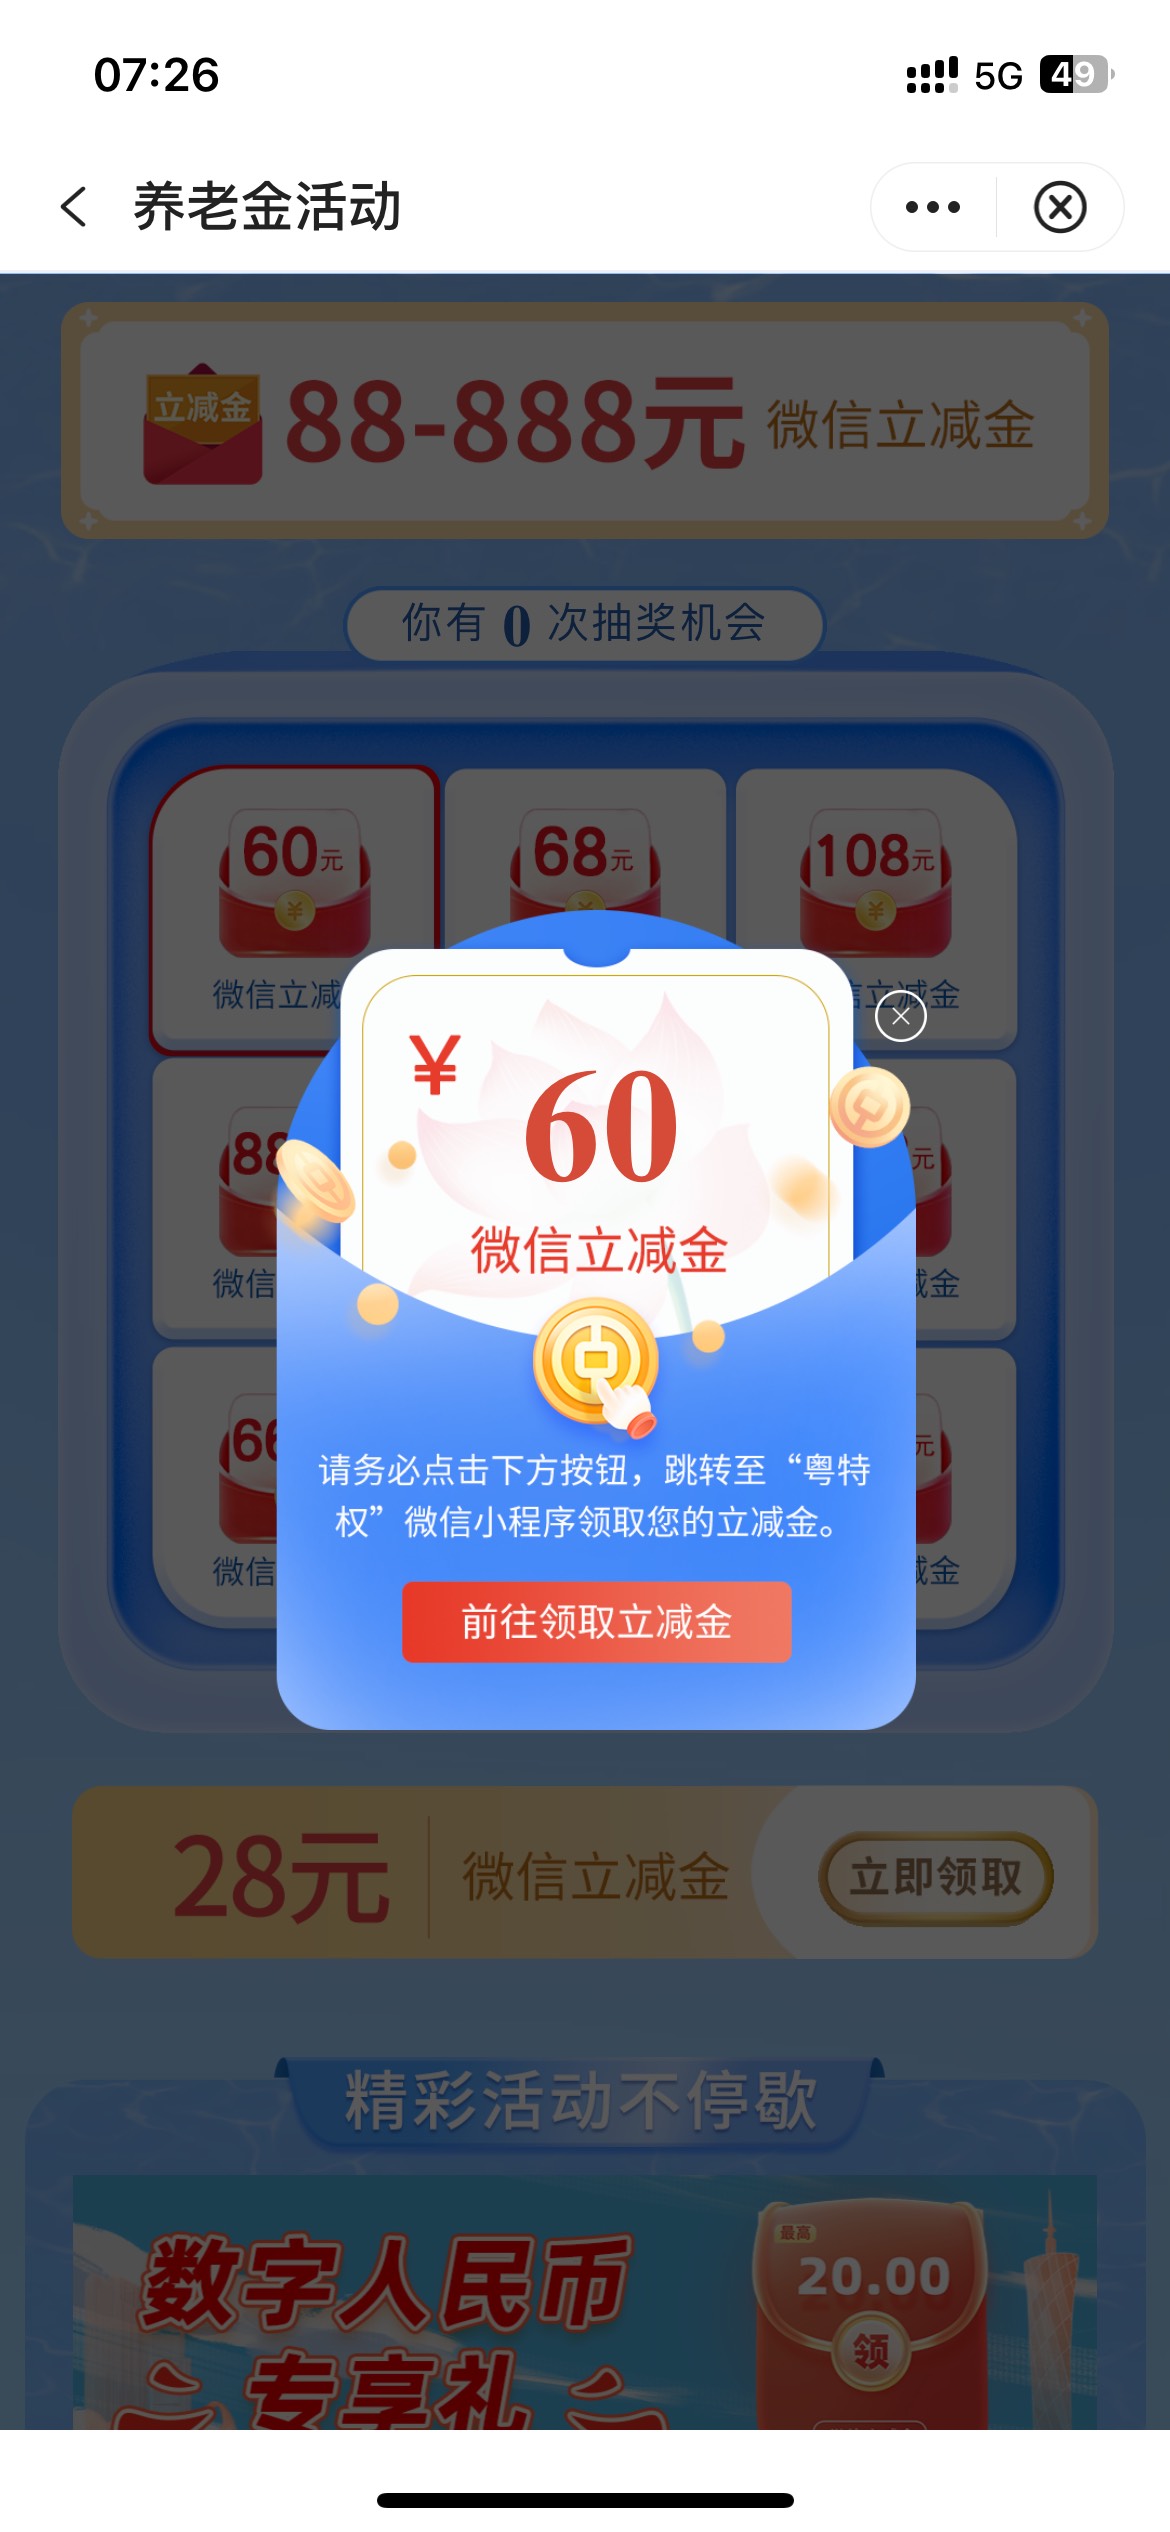 [福利在线]广东中行养老金开户得60+28，昨天开的今天就可以抽奖了，28还没用得